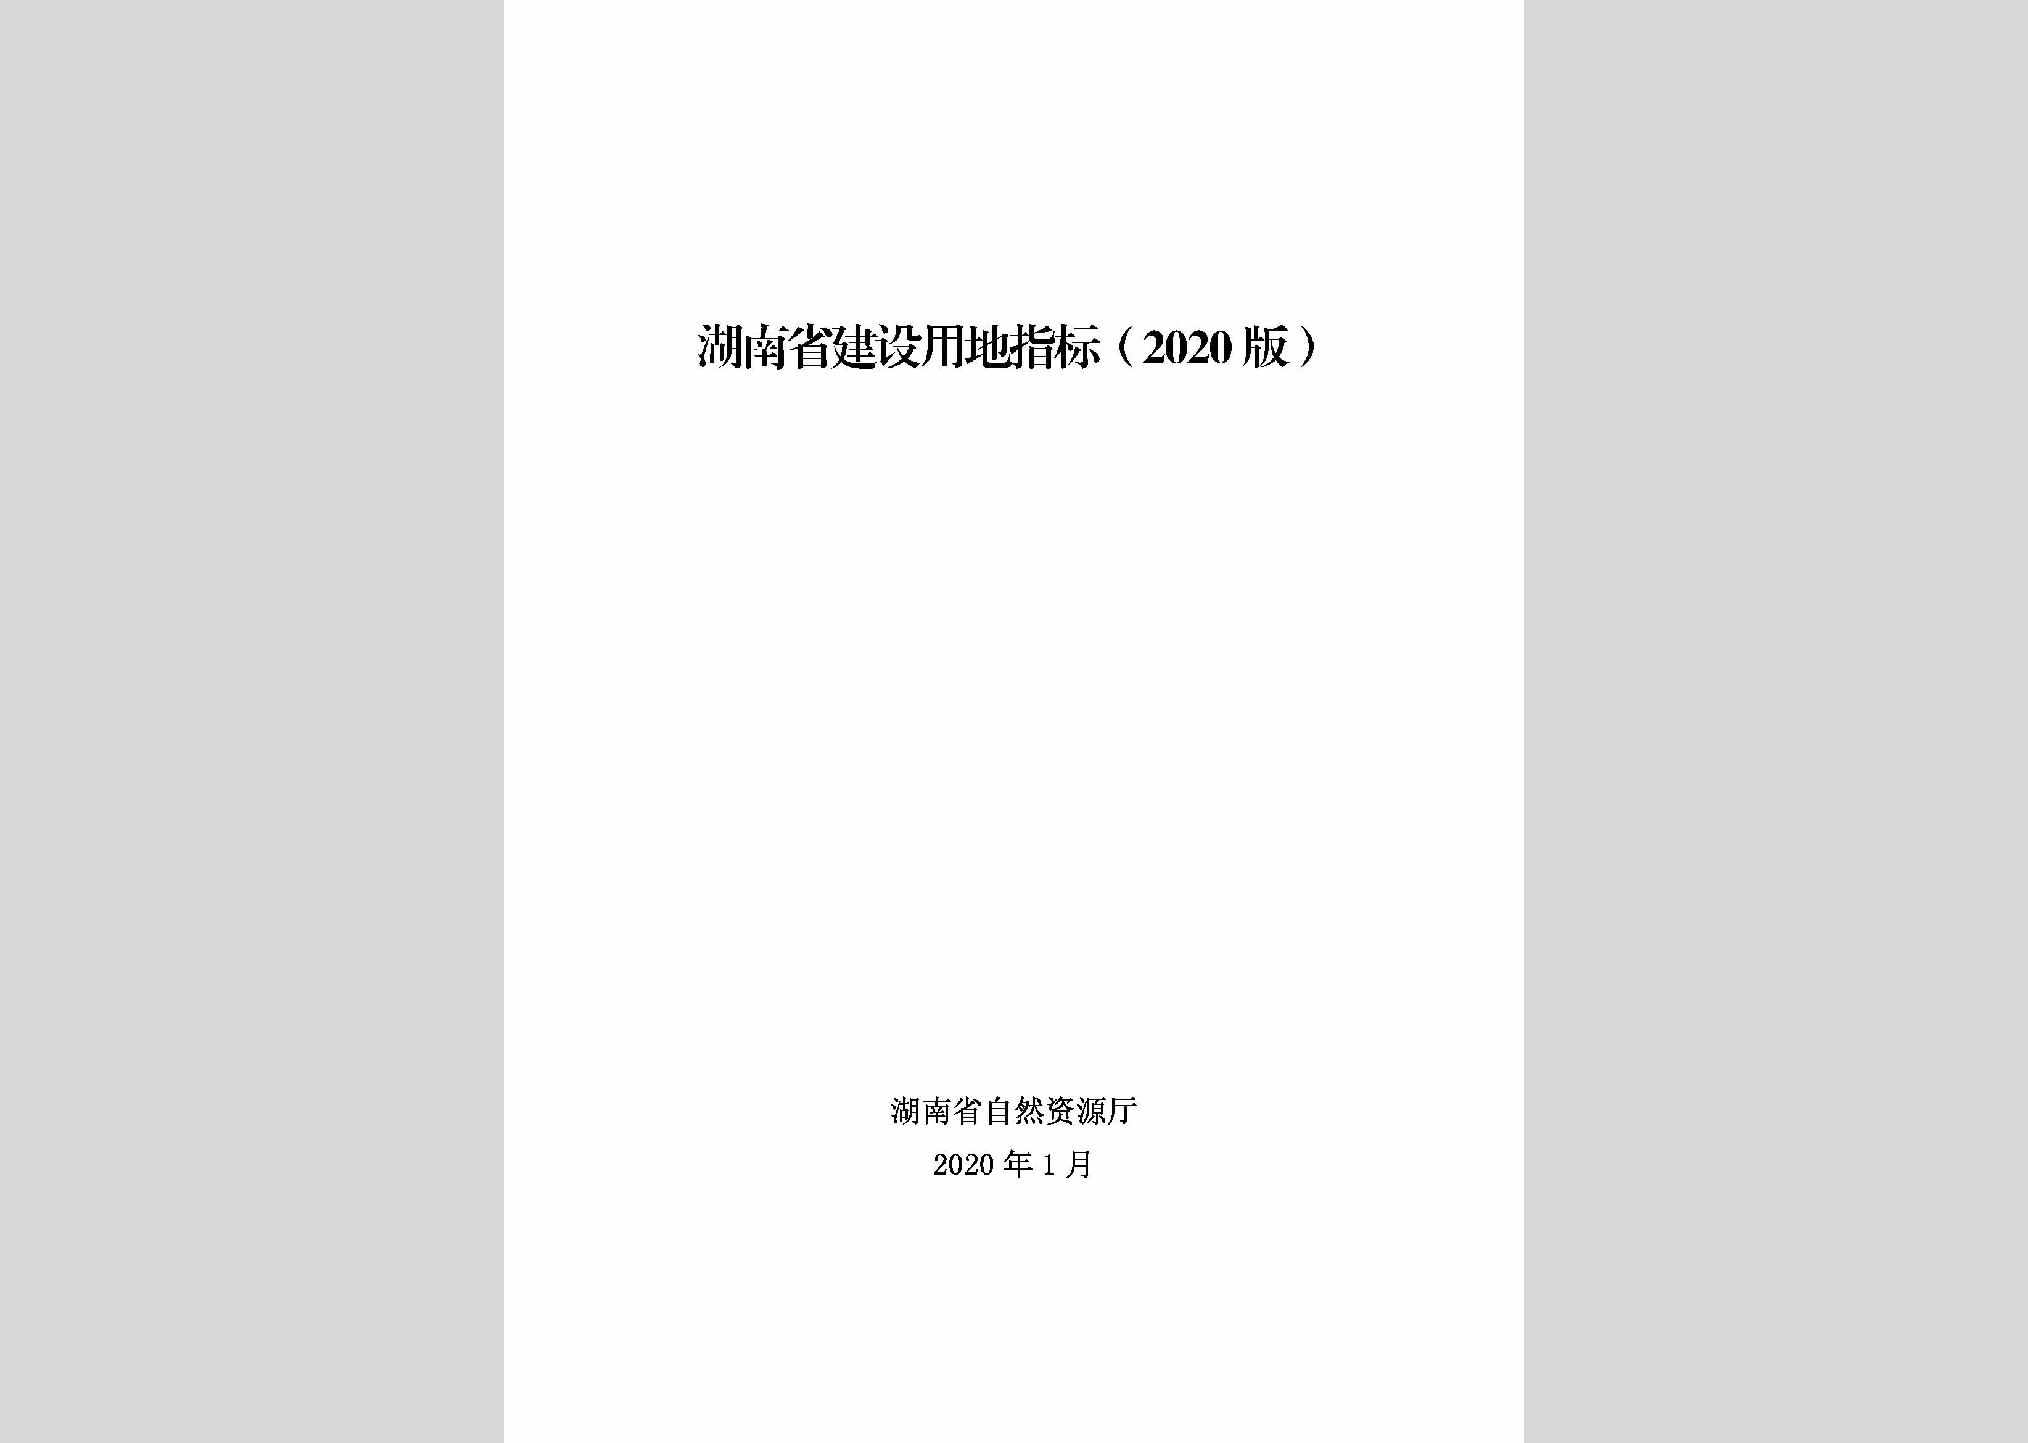 HNJSYDZB：湖南省建设用地指标（2020版）